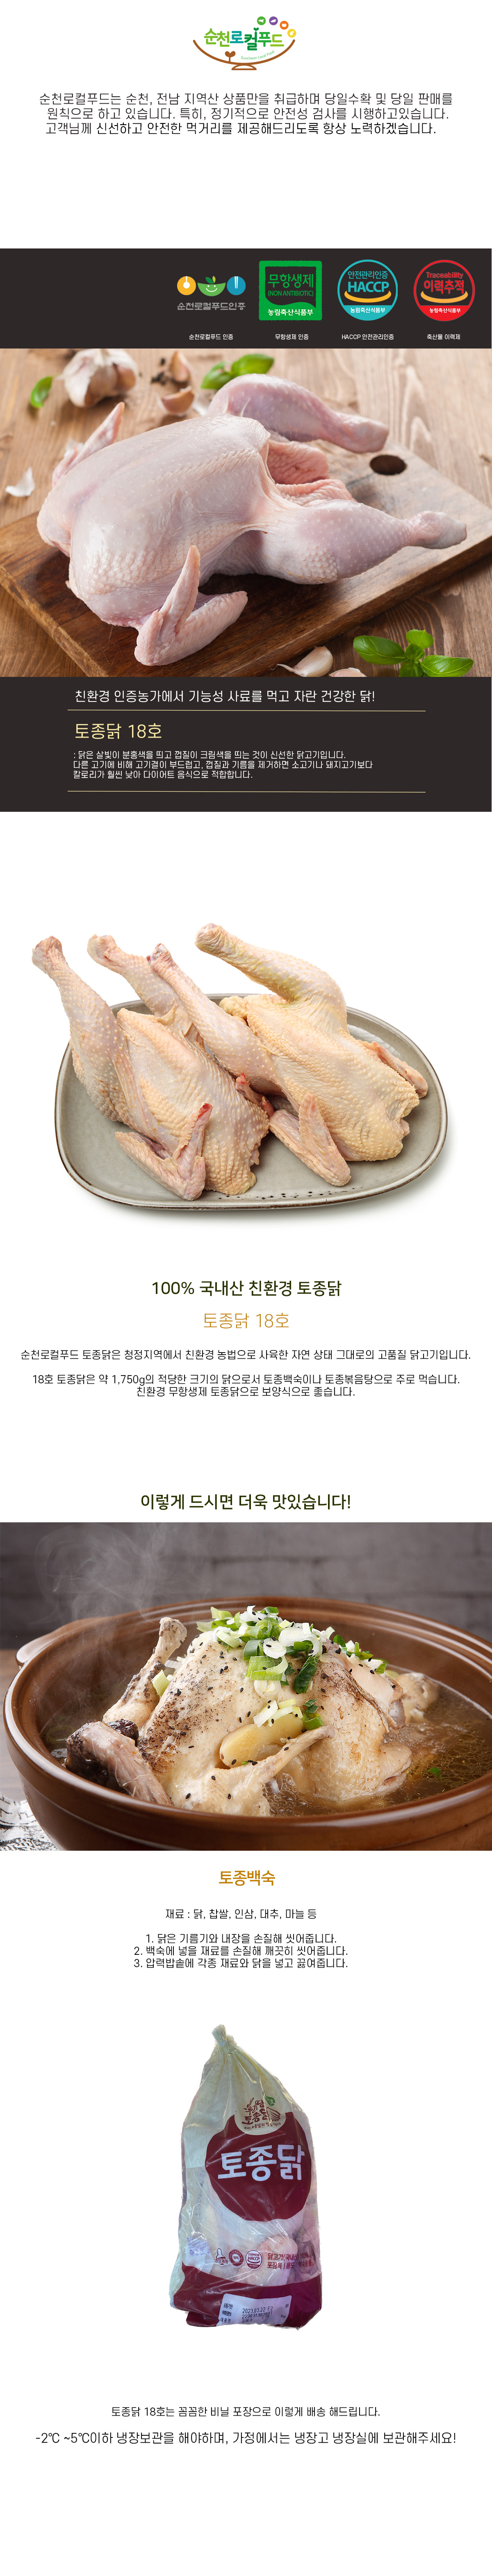 [순천로컬푸드_정육] 토종닭 18호 (1.8kg)